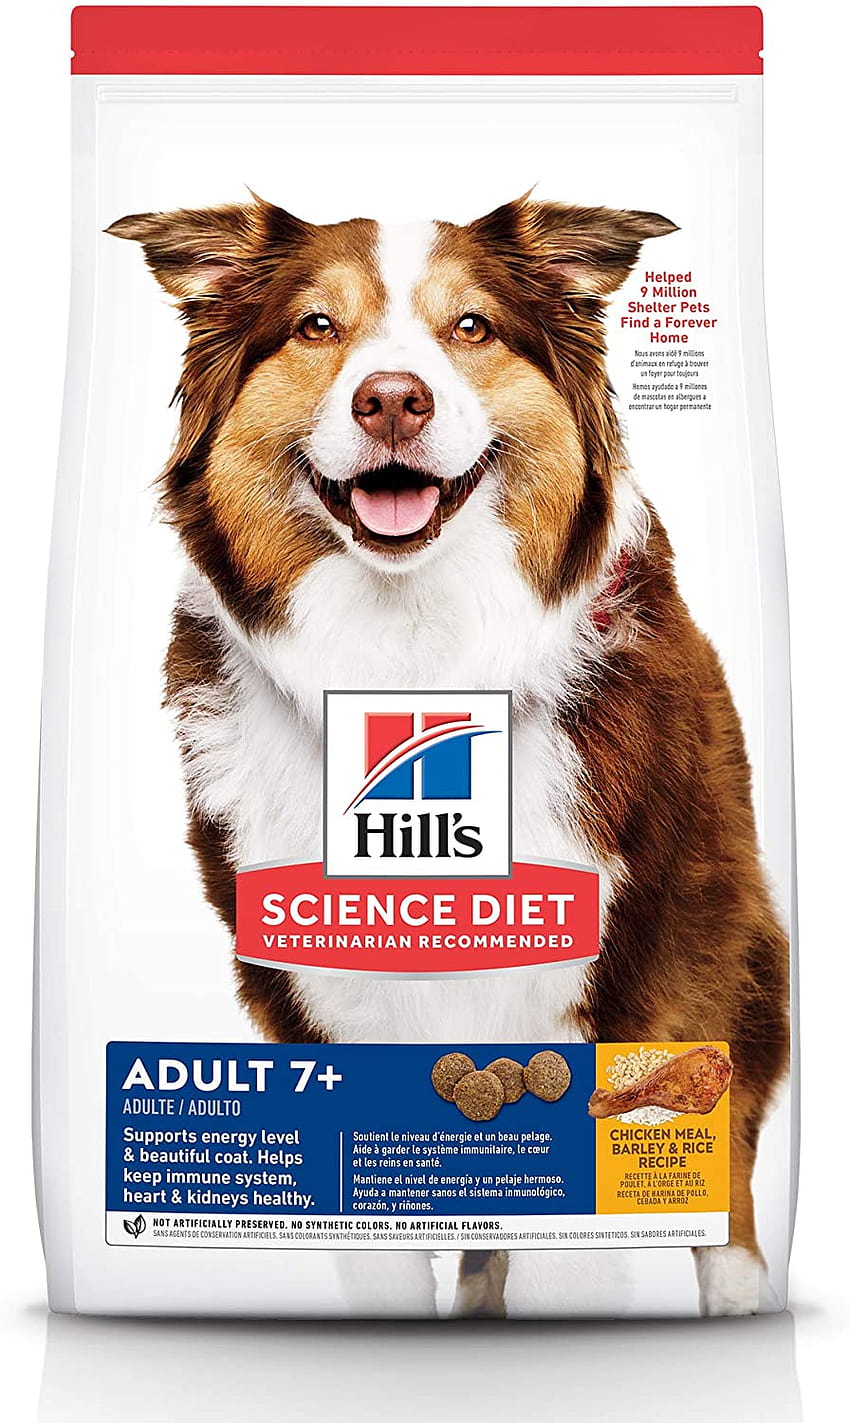 ヒルズ サイエンス ダイエット ドライ ドッグフード シニア犬用 成犬用 チキンミール 大麦 玄米 レシピ 33ポンド 袋 : ペット用品 HD電話の壁紙